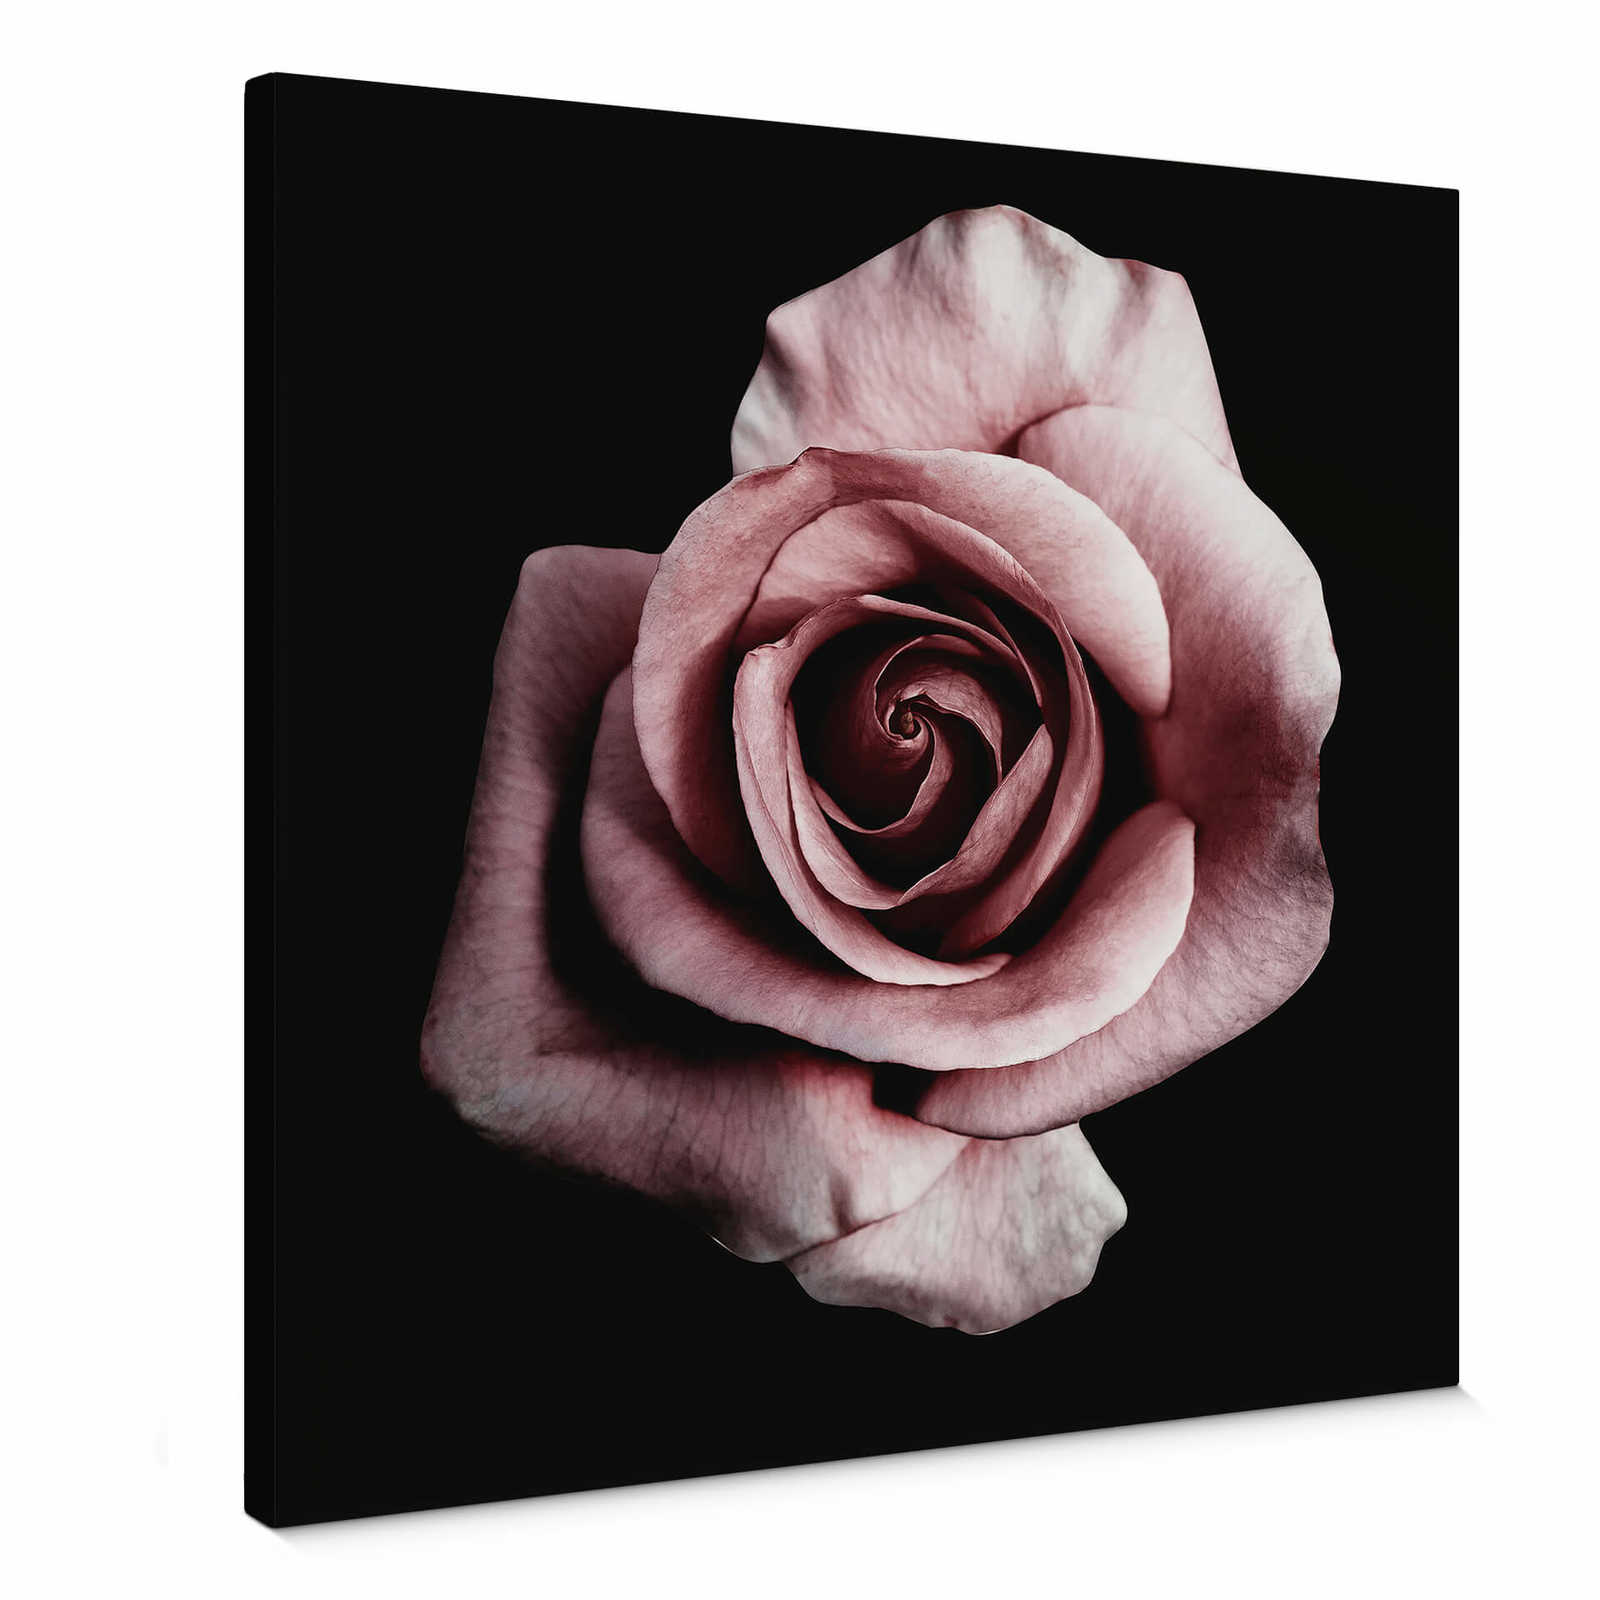         Leinwandbild Rosenblüte romantisches Blütenbild – 0,50 m x 0,50 m
    